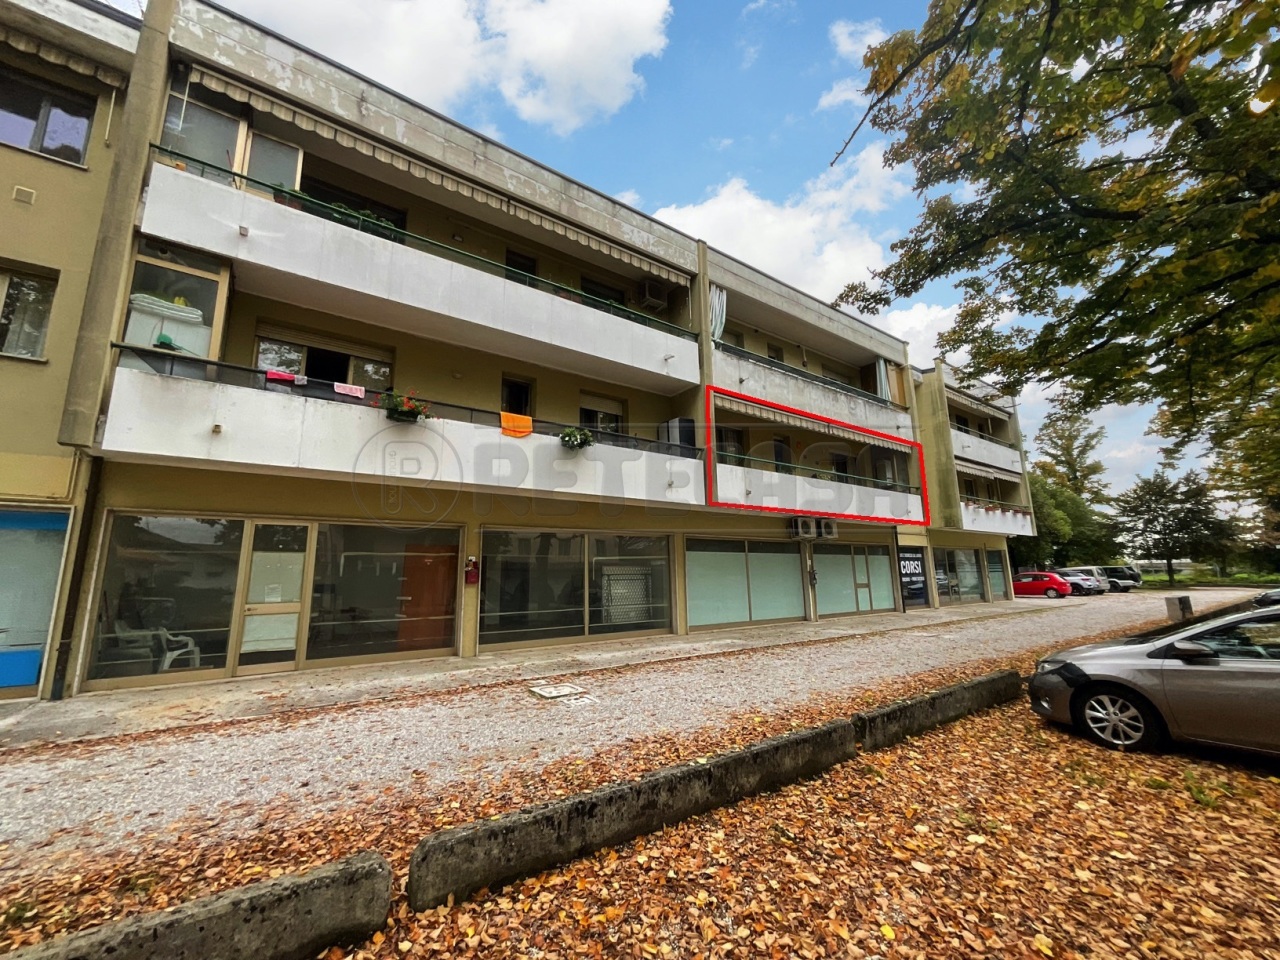 Appartamento in vendita a Cervignano del Friuli, 4 locali, prezzo € 78.000 | PortaleAgenzieImmobiliari.it